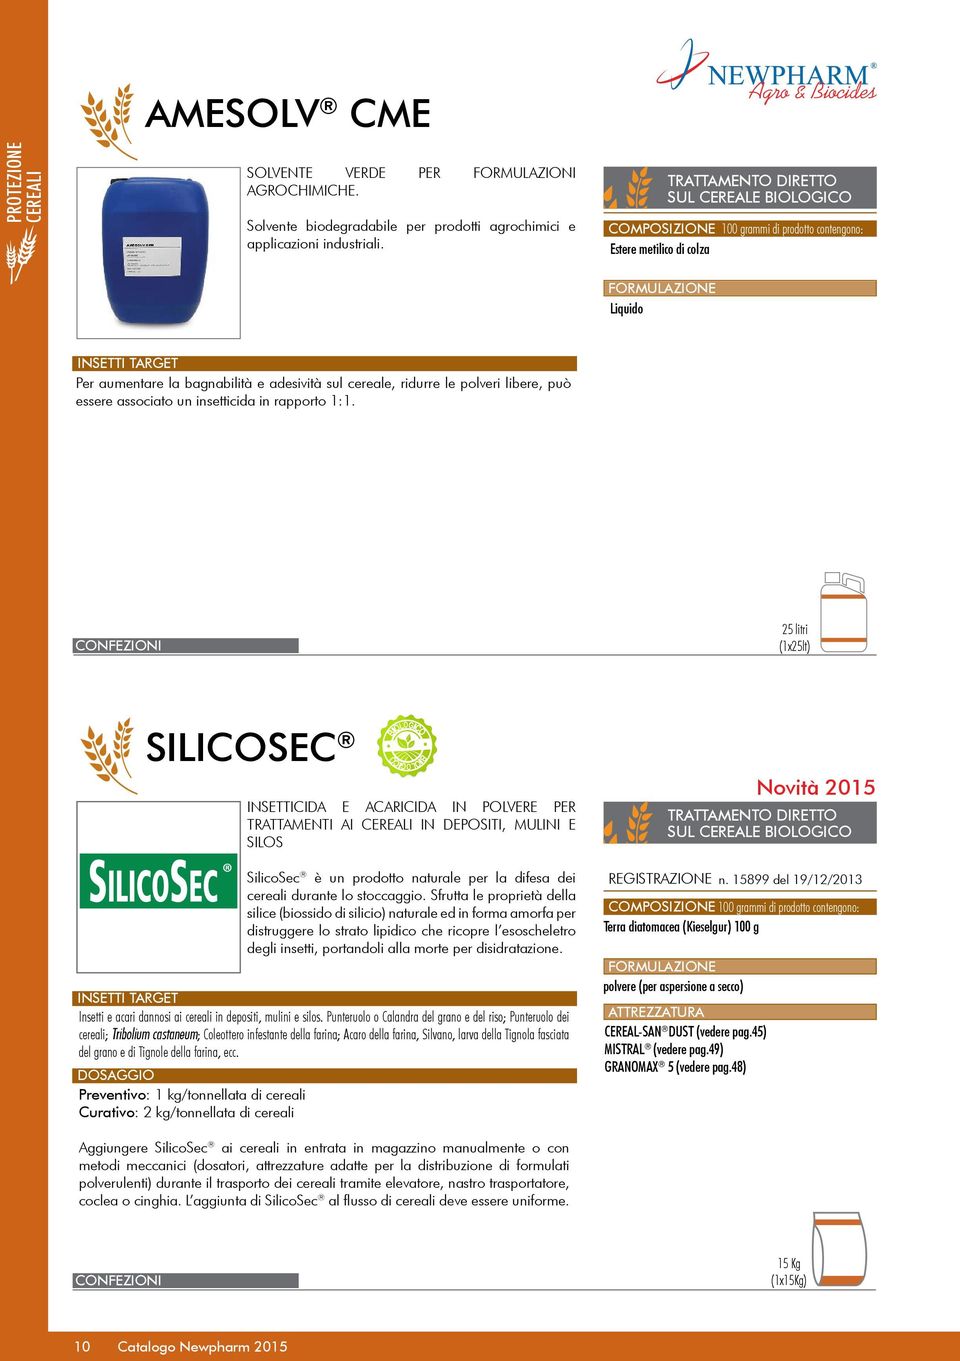 libere, può essere associato un insetticida in rapporto 1:1. 25 litri (1x25lt) SILICOSEC Insetti e acari dannosi ai cereali in depositi, mulini e silos.